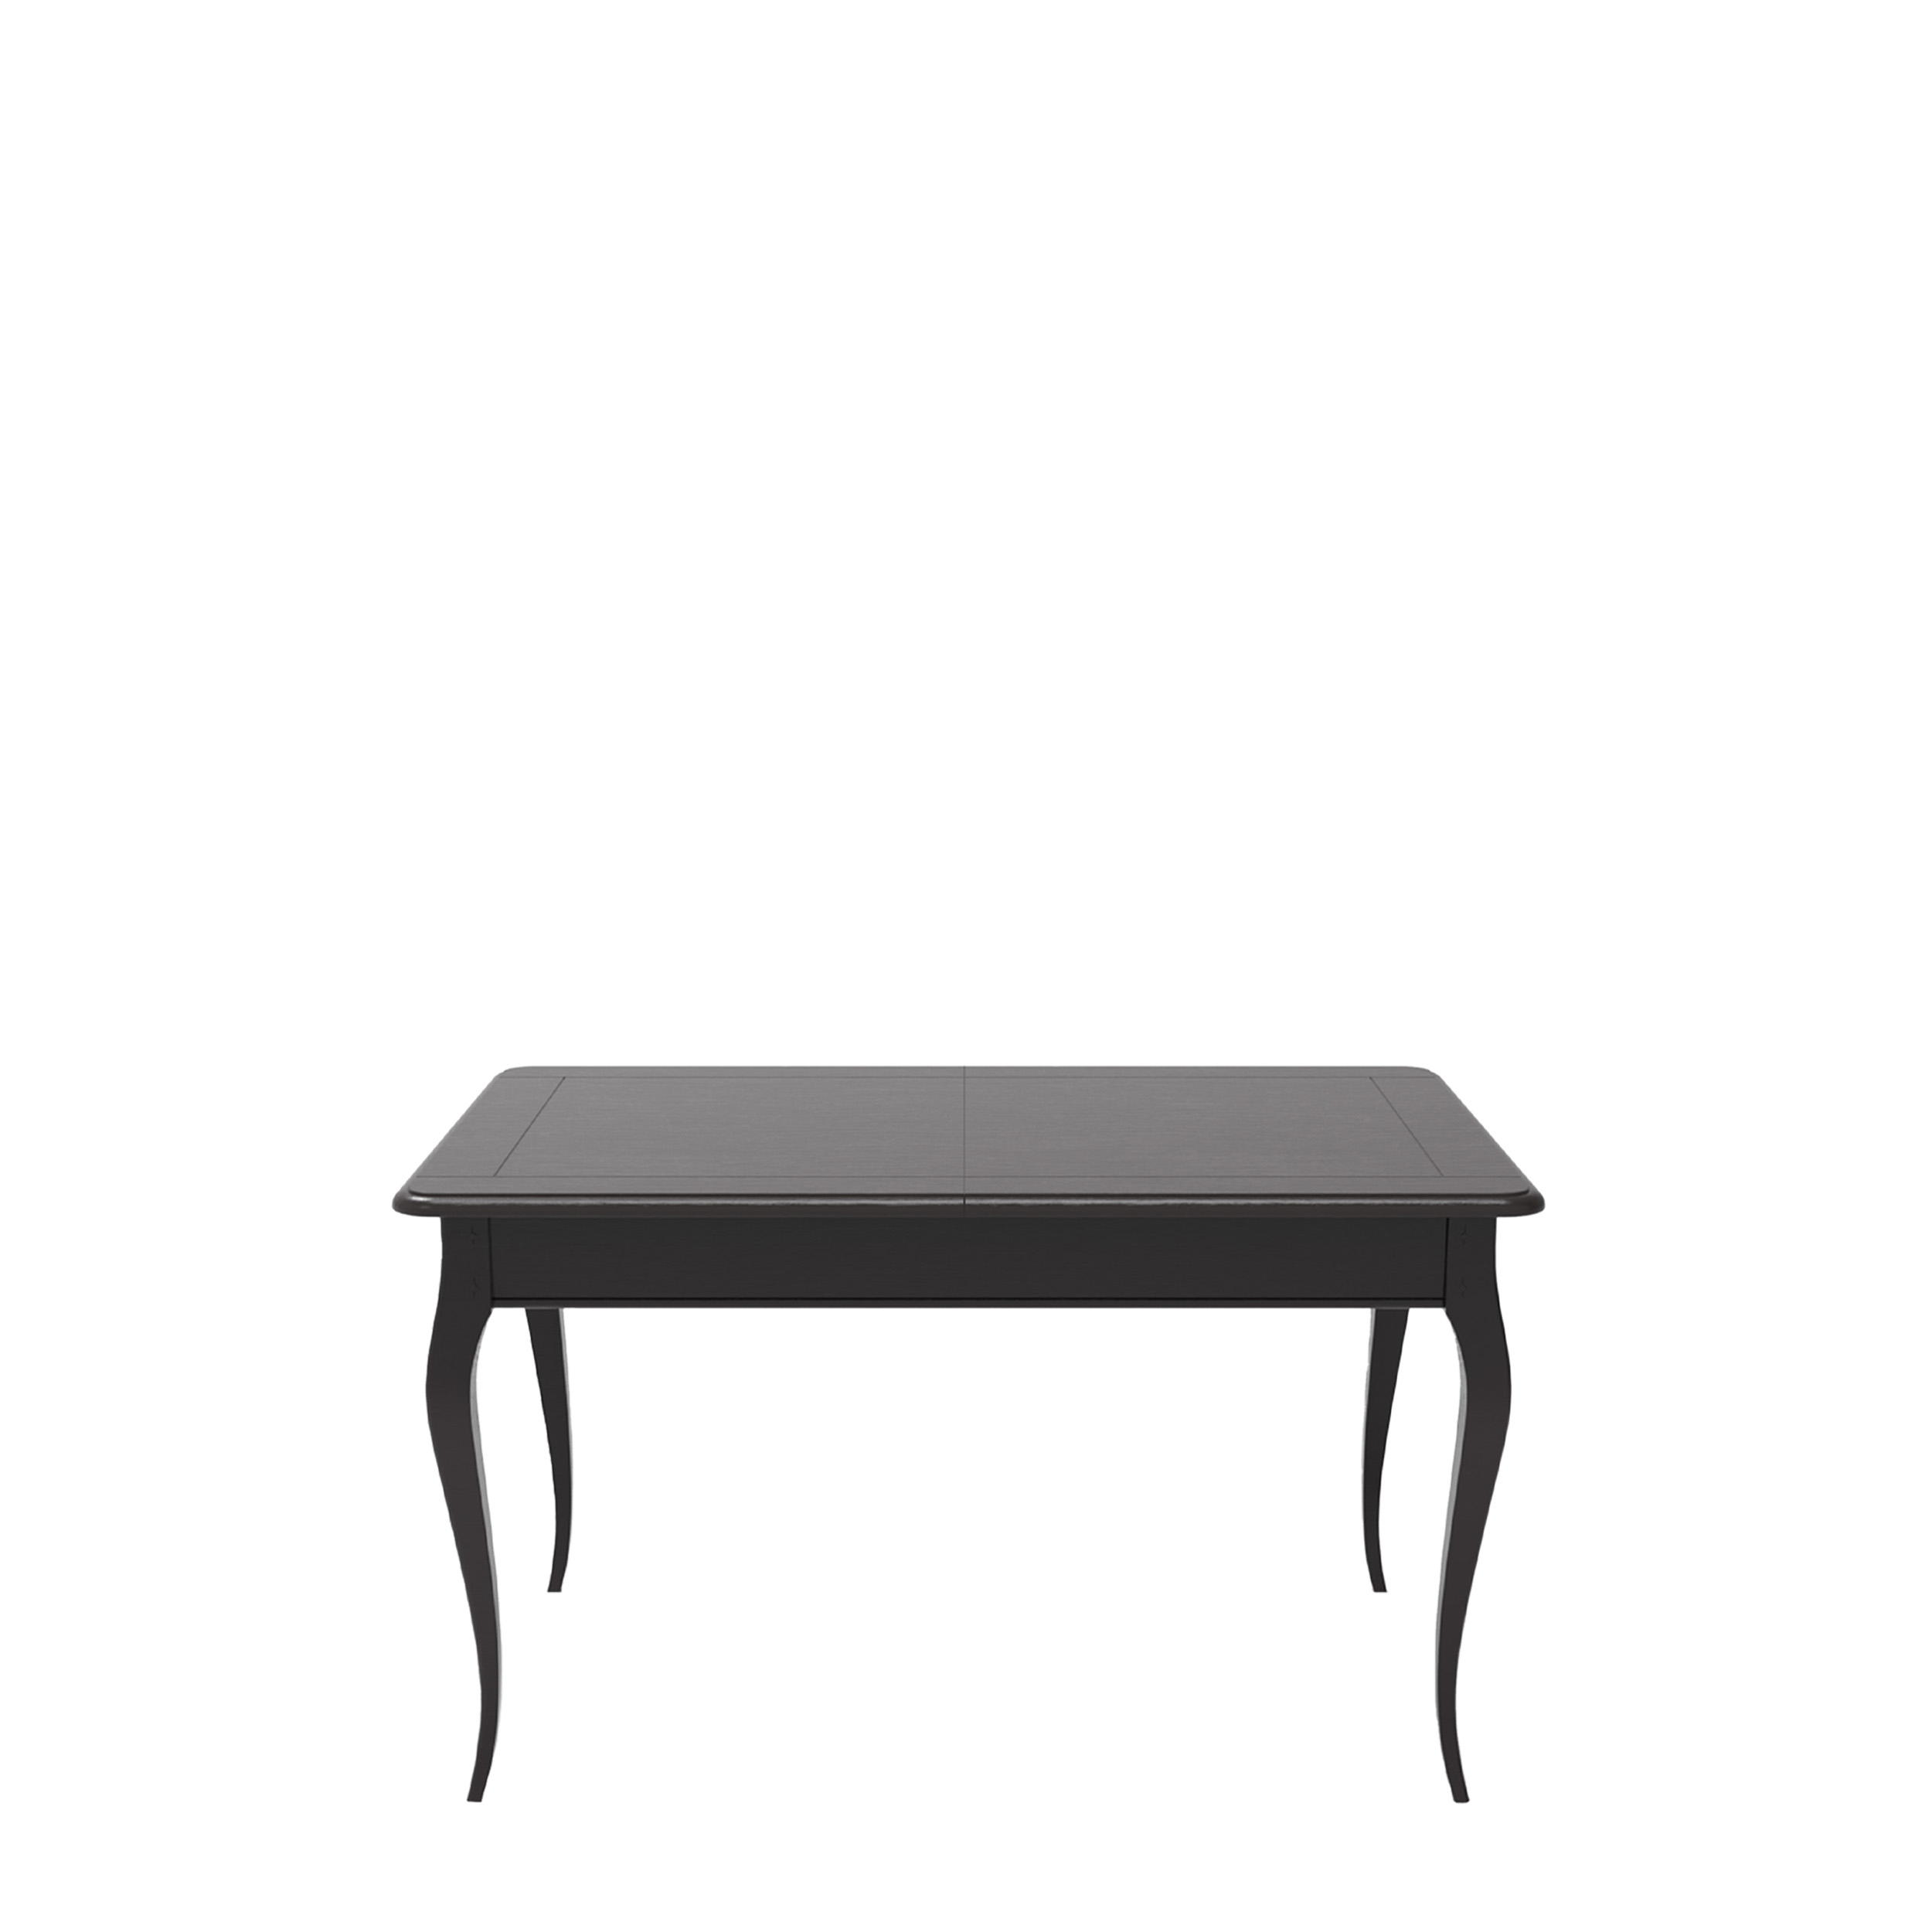 Tavolo rettangolare allungabile realizzato in legno massello, può essere  prodotto su misura. - MARIONI - Arredi, illuminazione e complementi made in  Italy